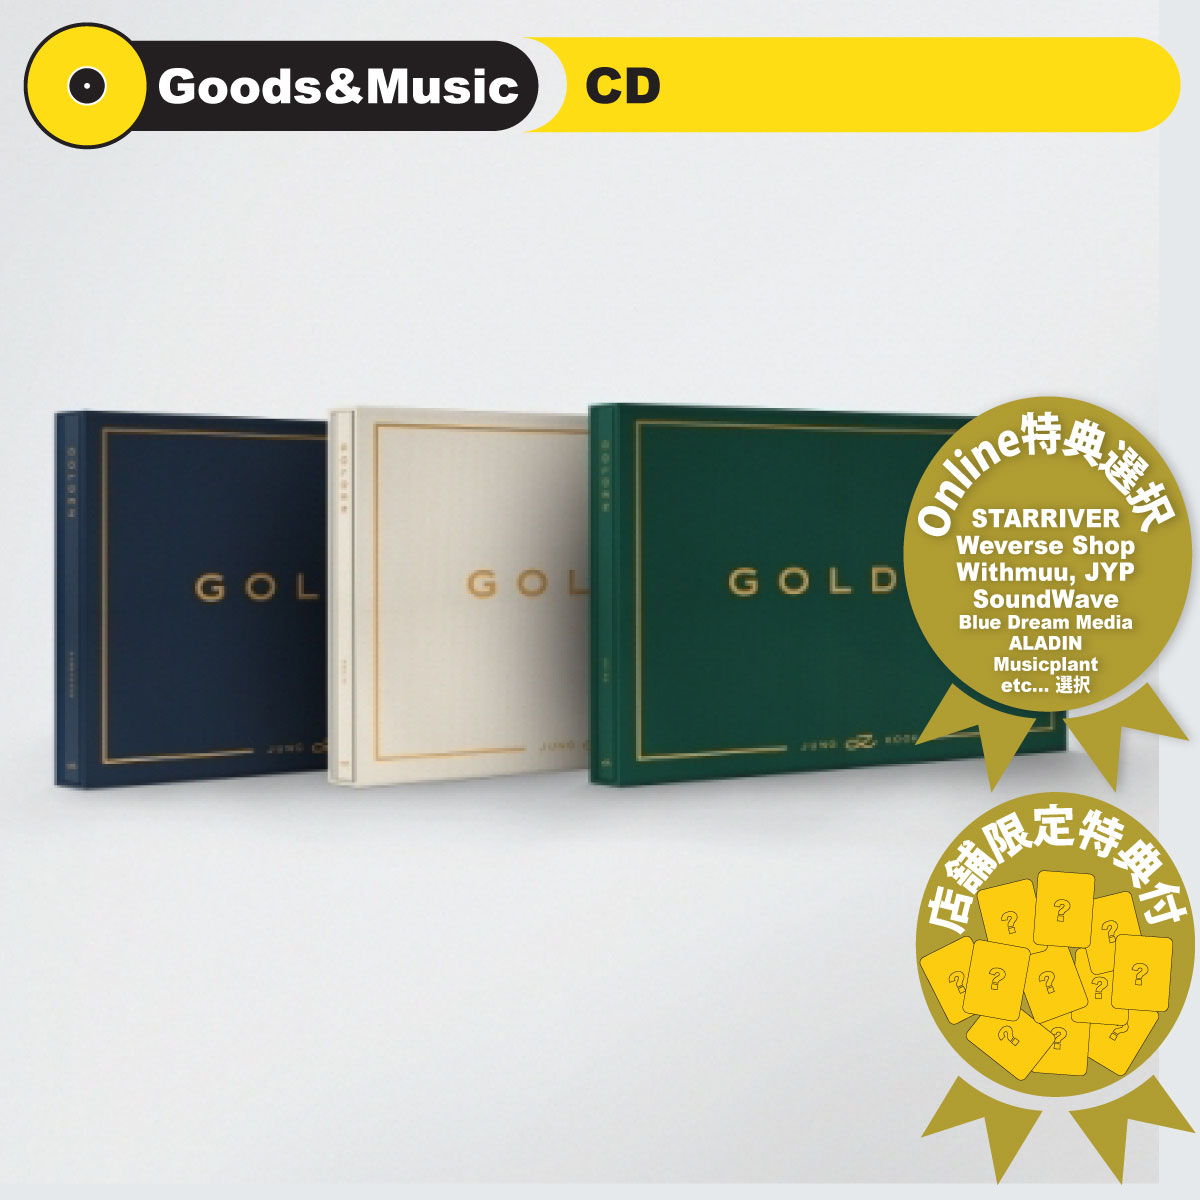 BTS JUNGKOOK GOLDEN 1ST SOLO ALBUM 防弾少年団 ジョン クック 1集 ソロー アルバム